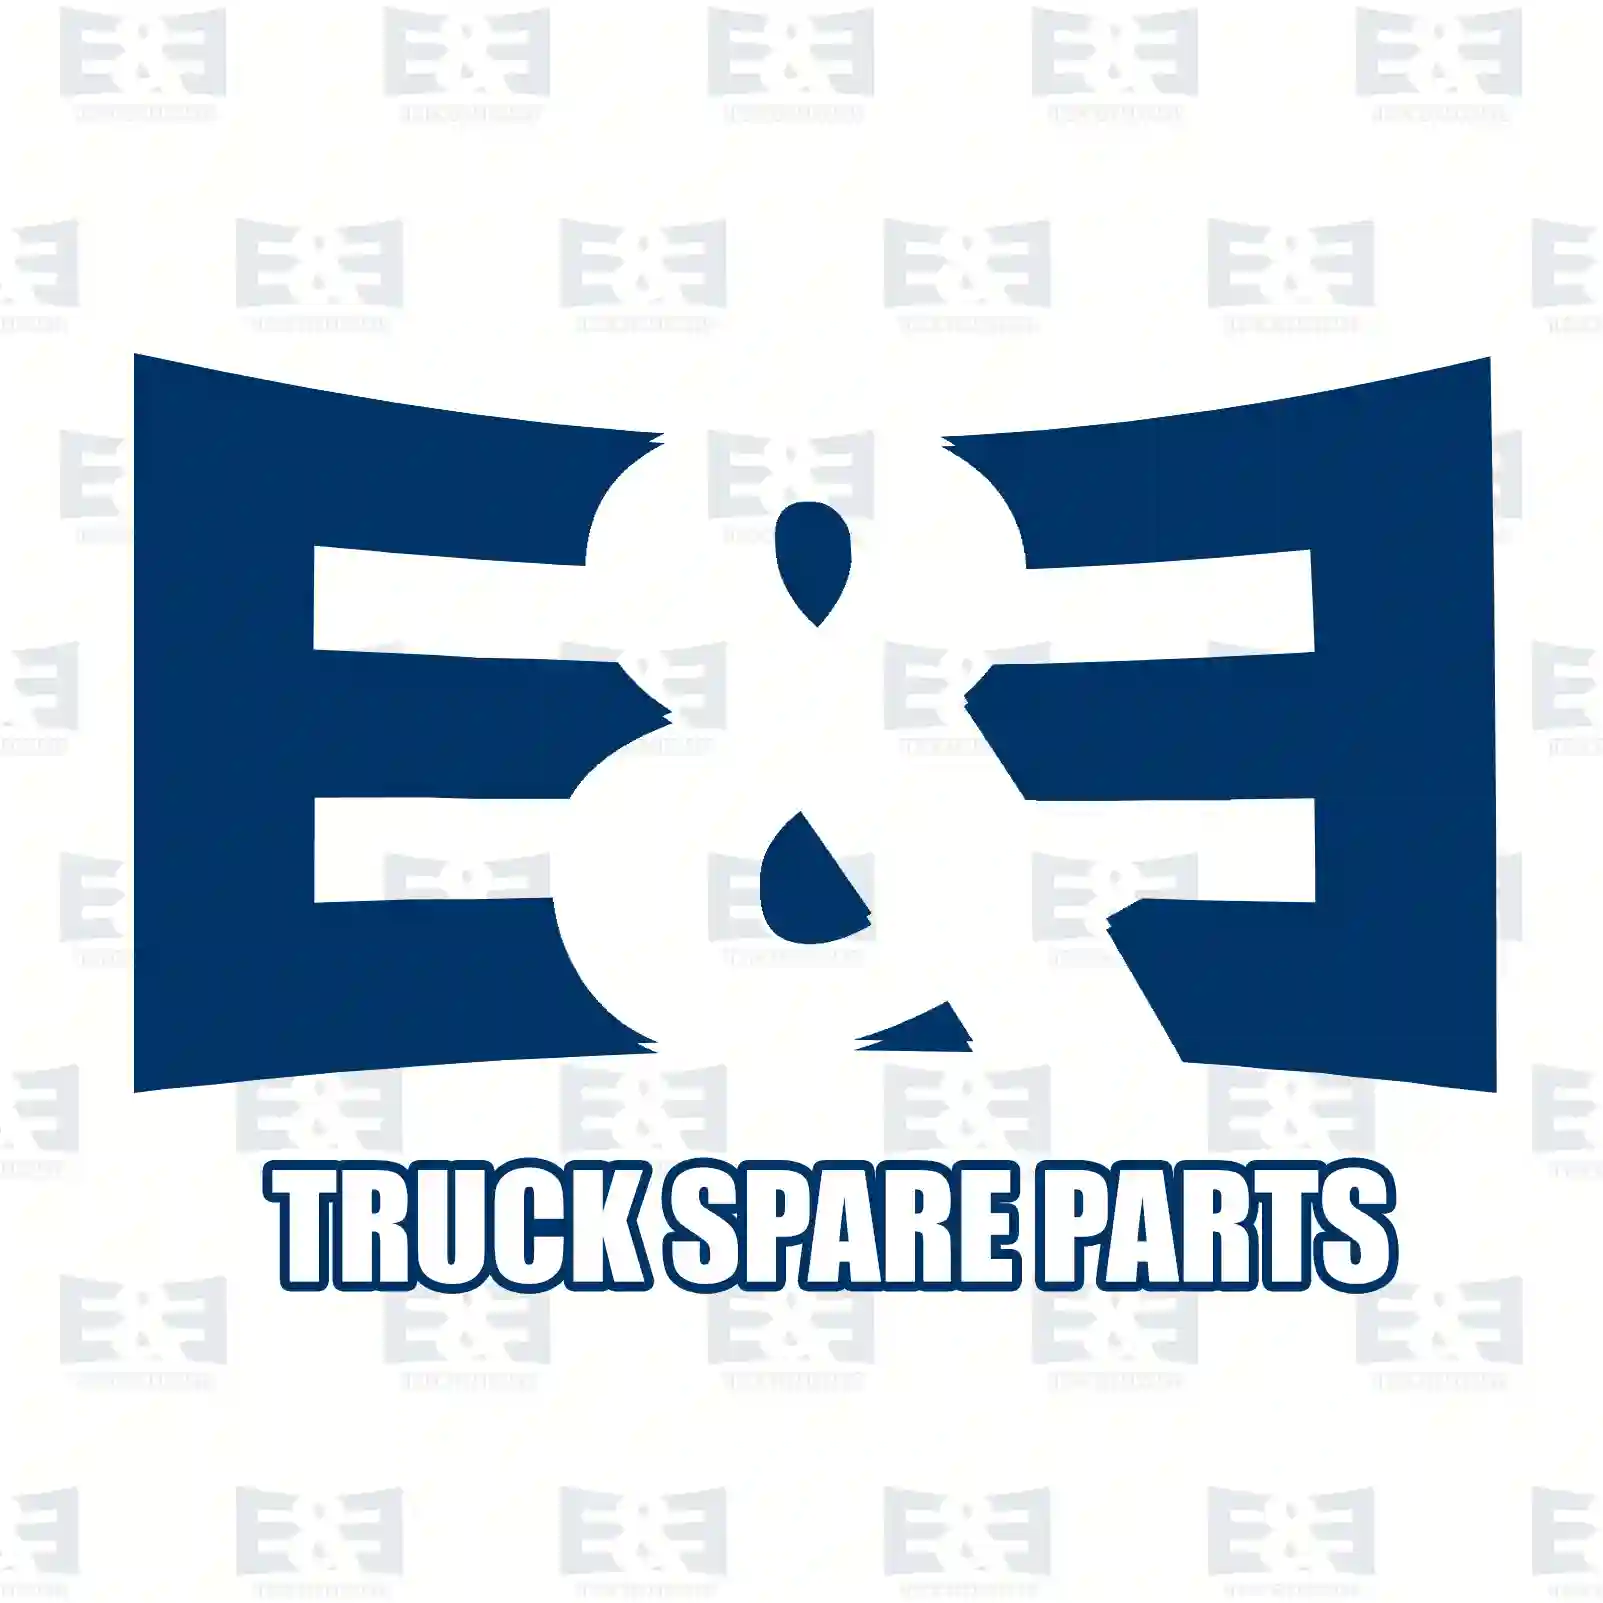 O-ring, 2E2279148, 0199977248, 0209977848, 0289972248, ||  2E2279148 E&E Truck Spare Parts | Truck Spare Parts, Auotomotive Spare Parts O-ring, 2E2279148, 0199977248, 0209977848, 0289972248, ||  2E2279148 E&E Truck Spare Parts | Truck Spare Parts, Auotomotive Spare Parts